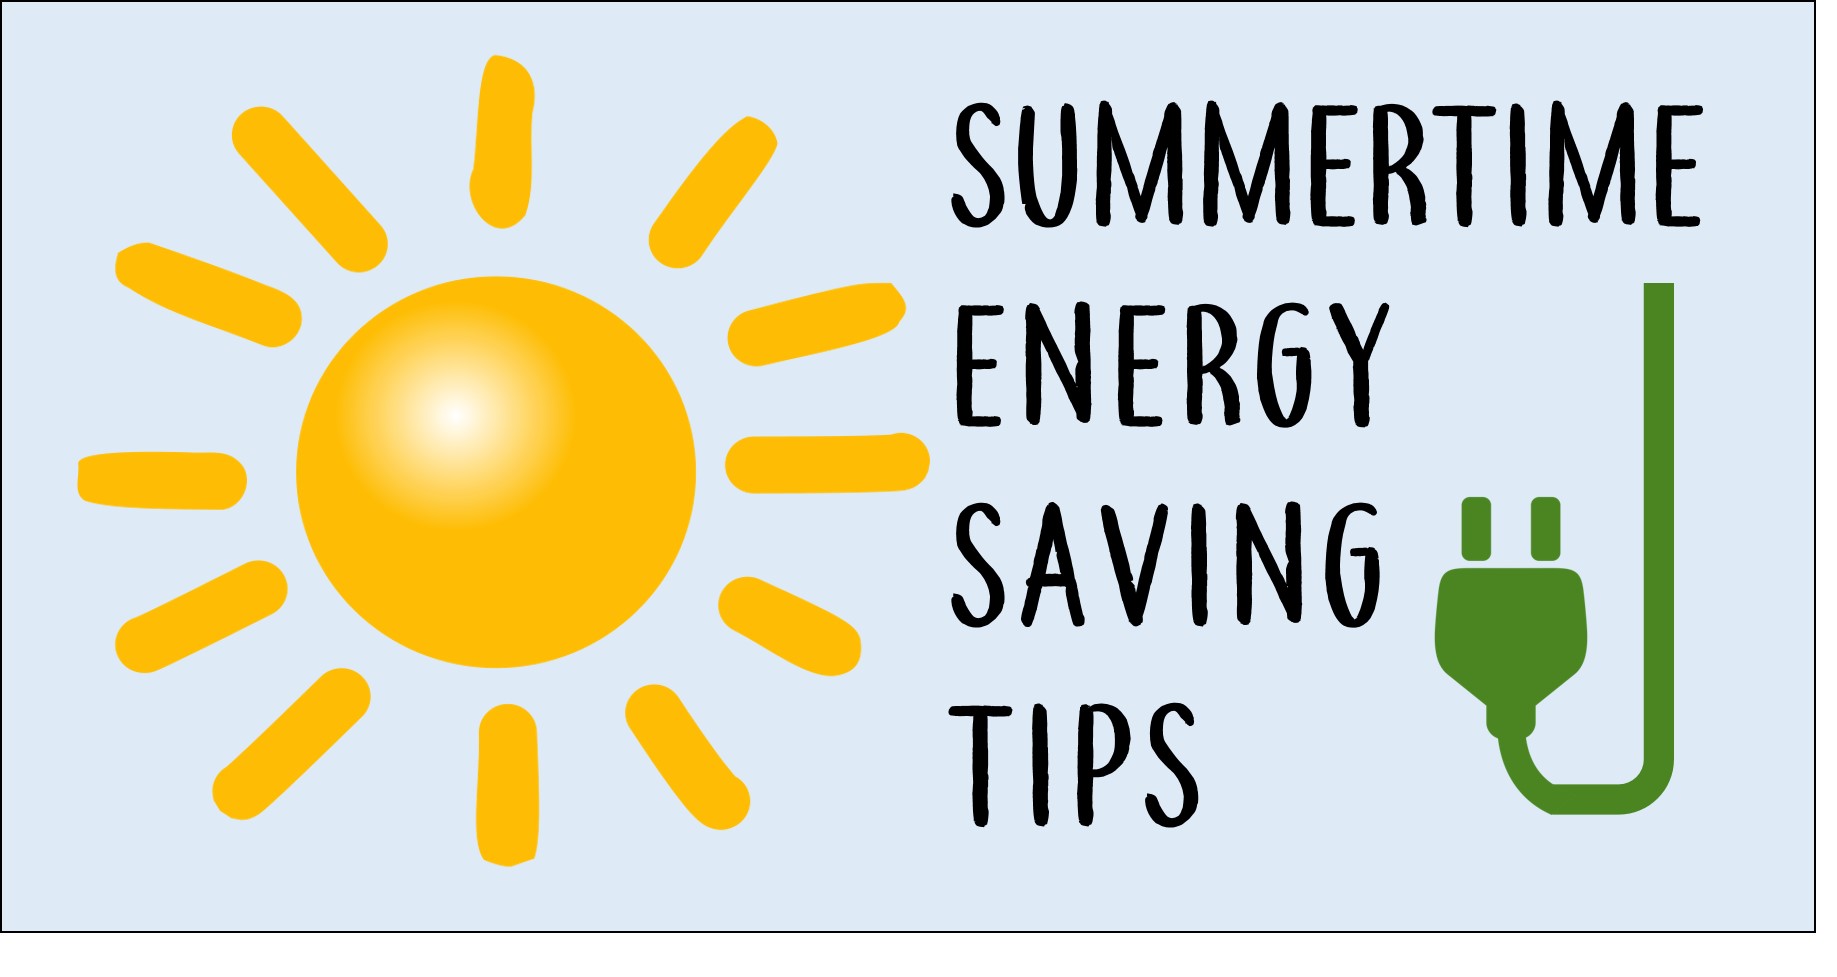 summertime energy saving tips july 2017